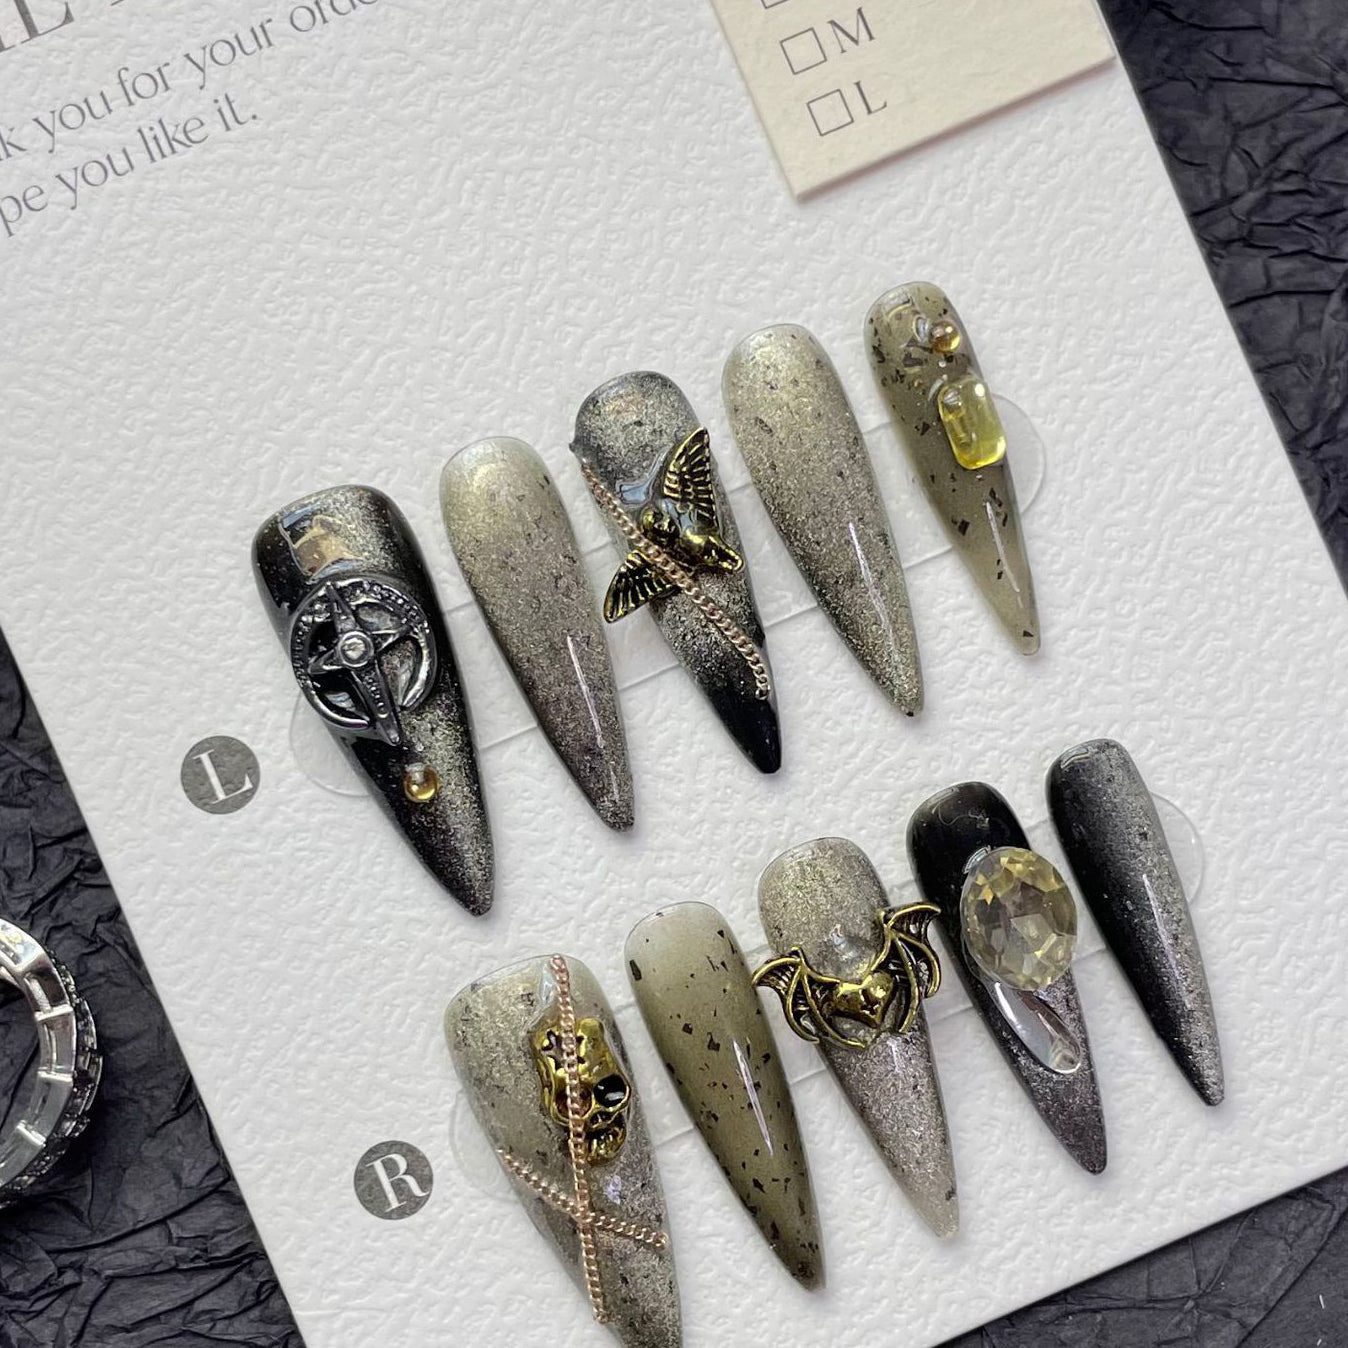 1275 Chain Cat Eye-stijl pers op nagels 100% handgemaakte kunstnagels goudkleurig zilverzwart